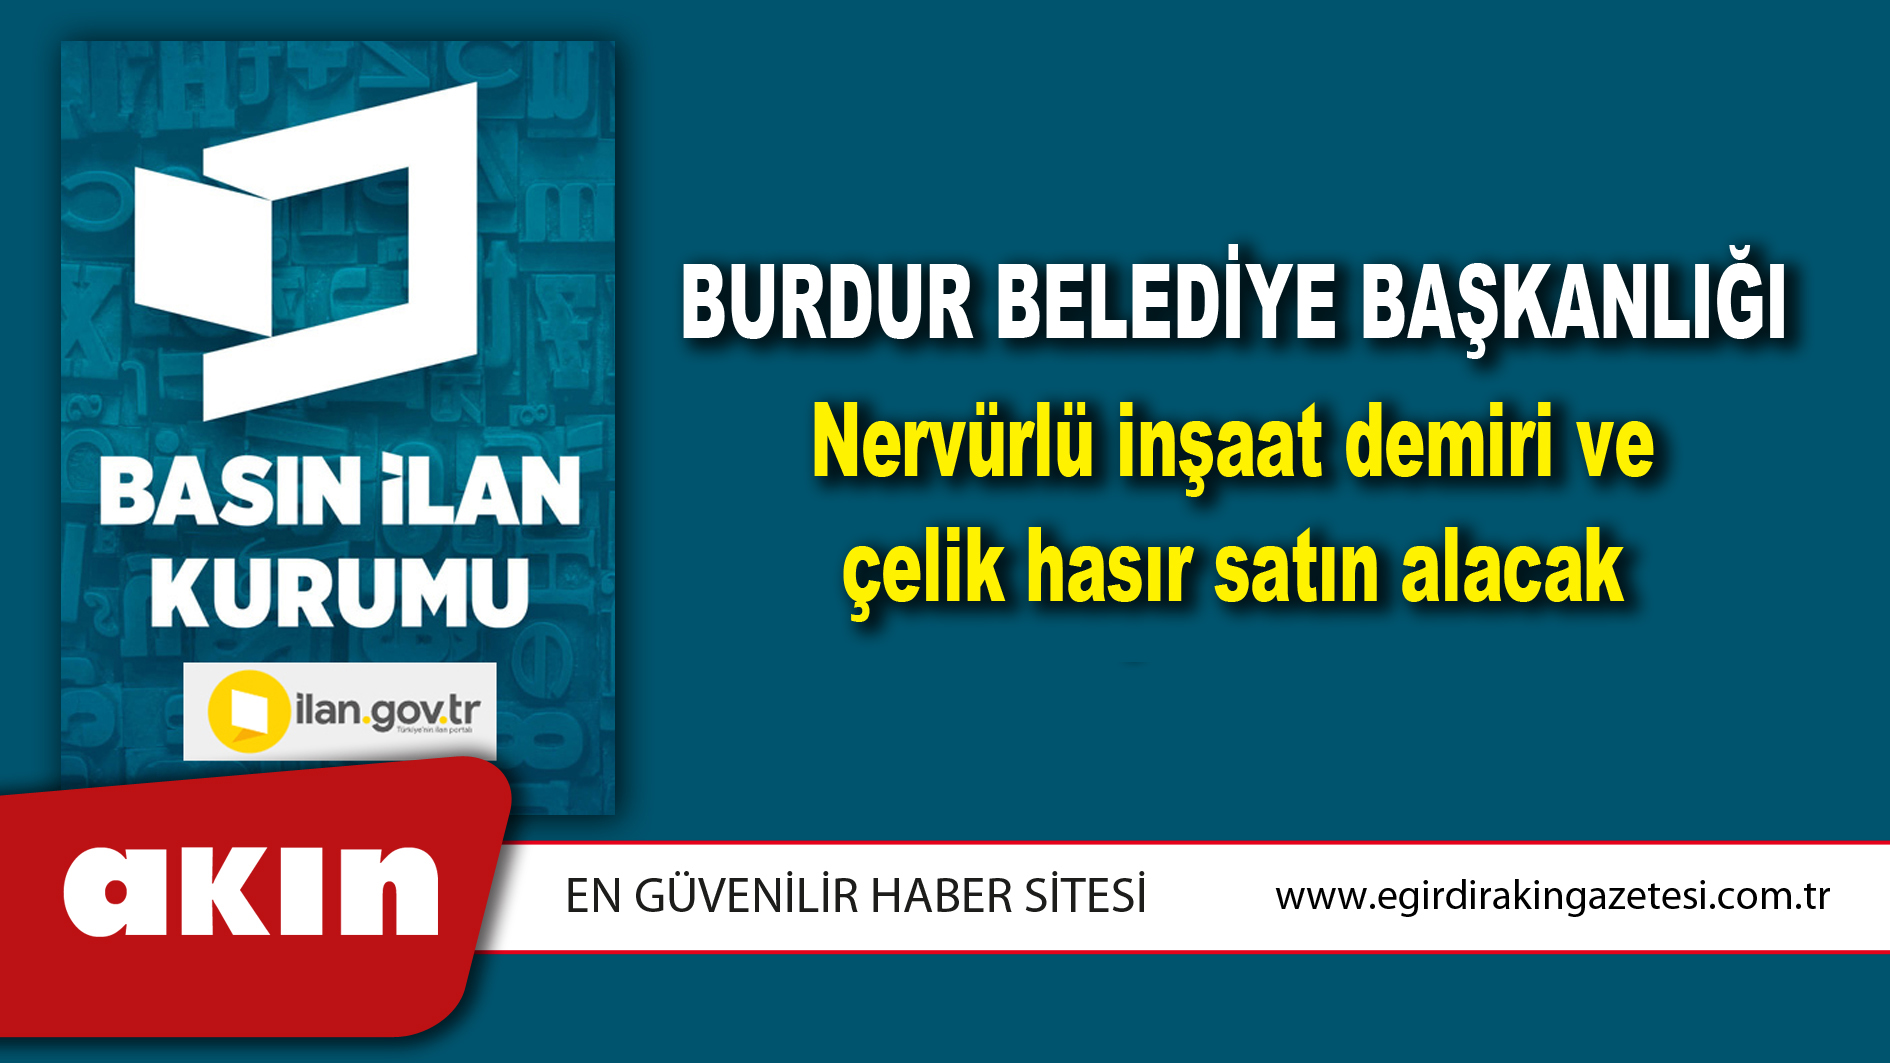 Burdur Belediye Başkanlığı Nervürlü inşaat demiri ve çelik hasır satın alacak